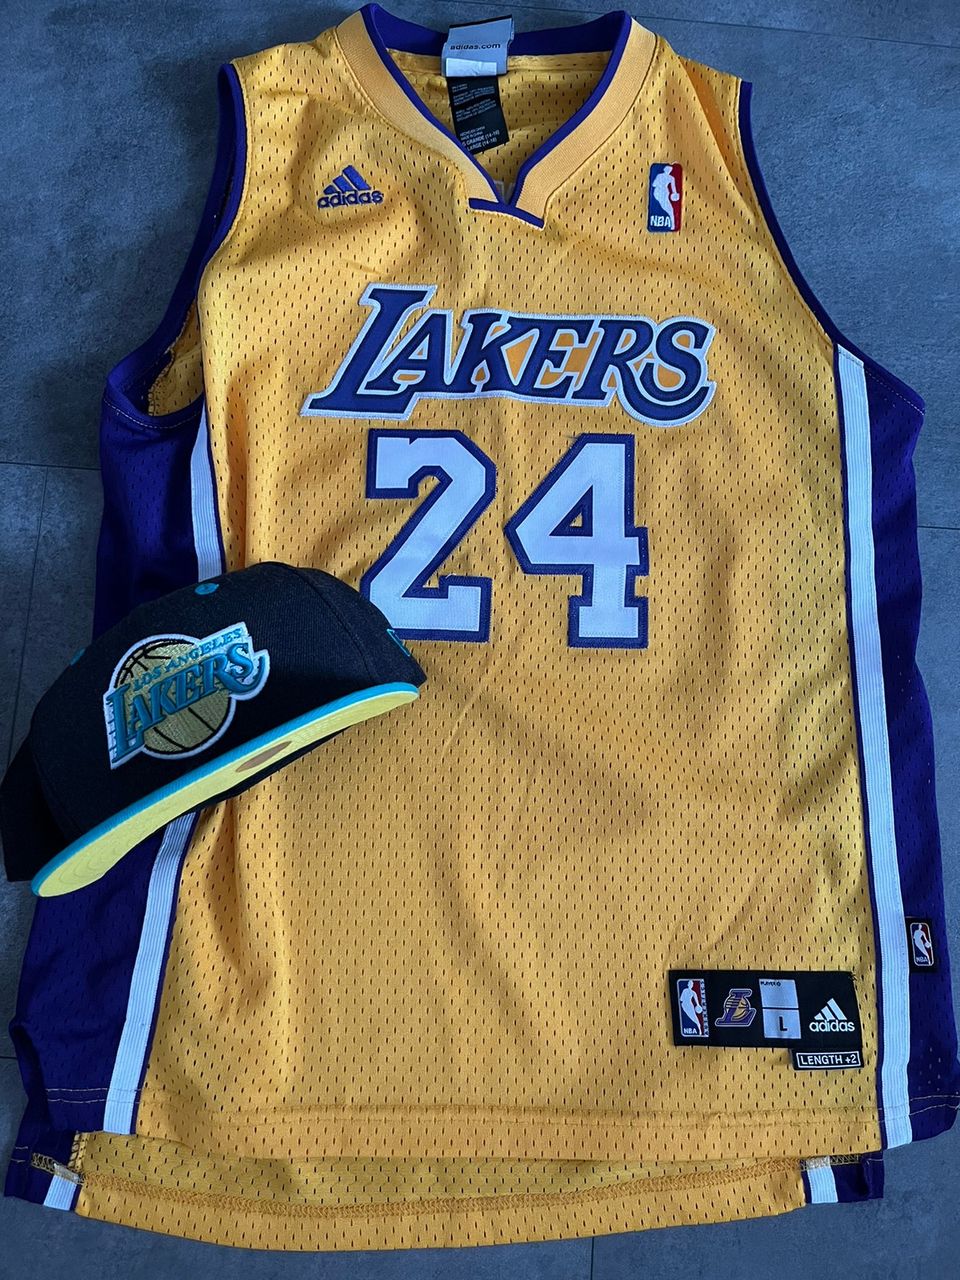 Los Angeles Lakers NBA pelipaita ja lippis